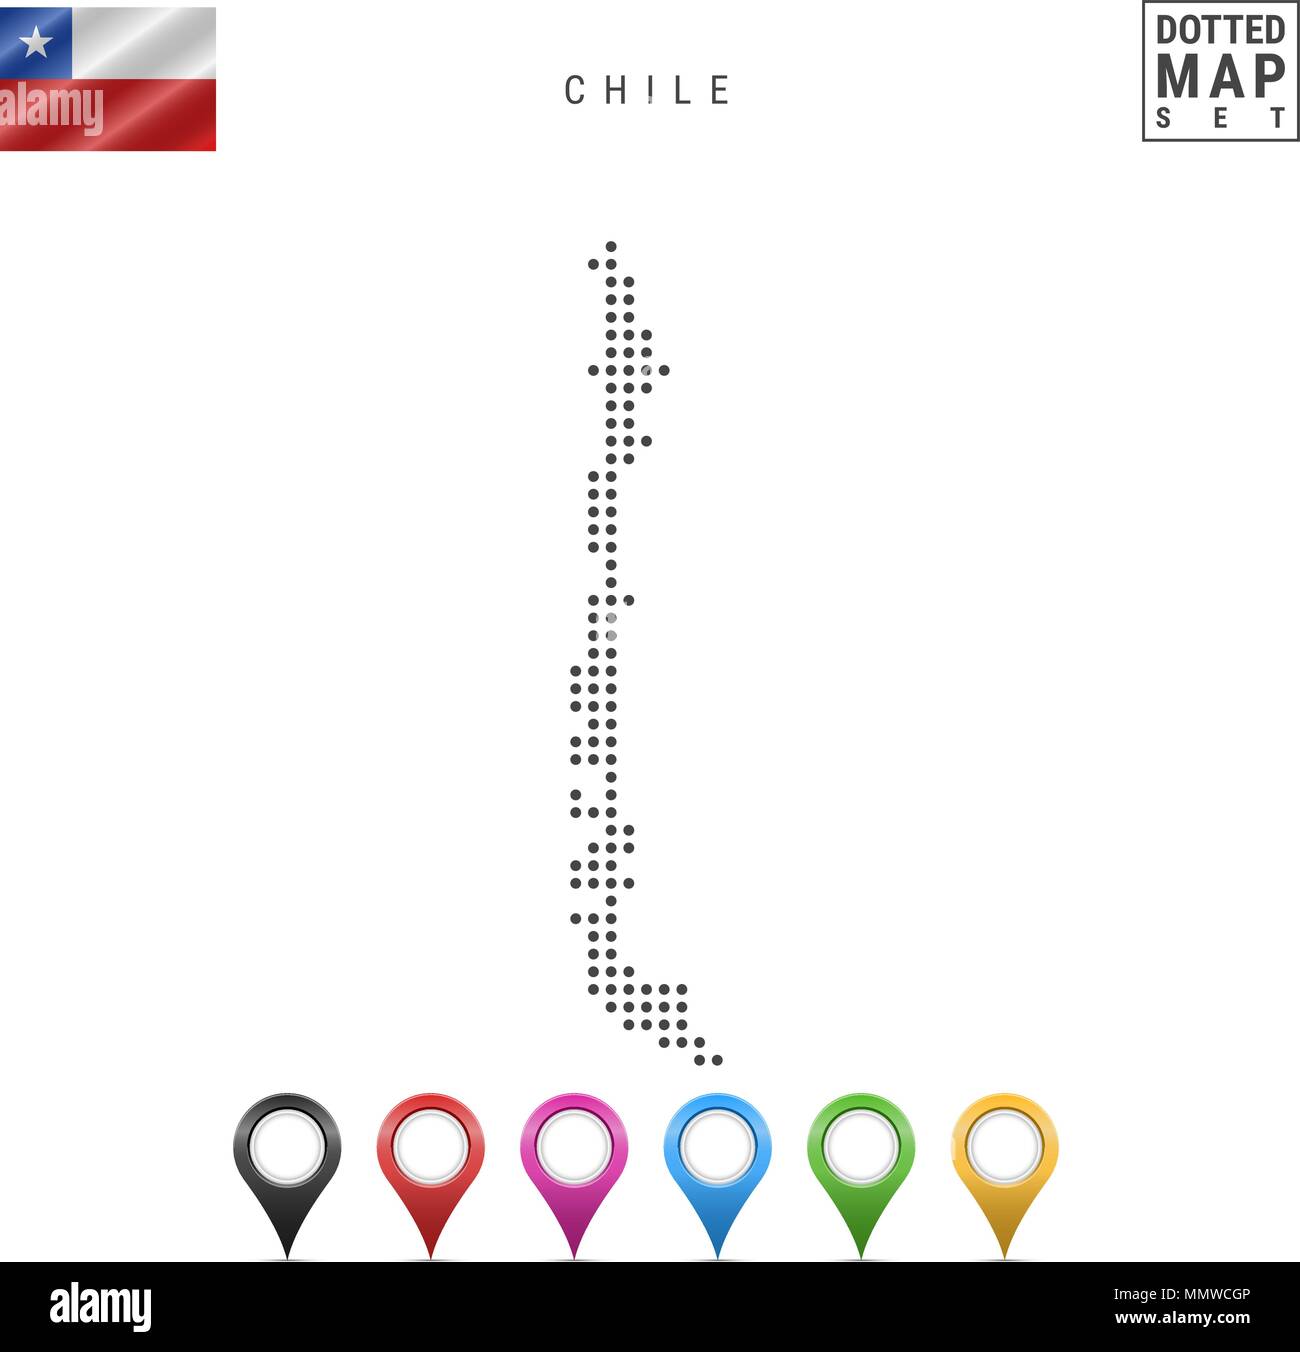 Vettore Mappa tratteggiata del Cile. Semplice Silhouette del Cile. La bandiera nazionale del Cile. Insieme multicolore i marcatori mappa Illustrazione Vettoriale